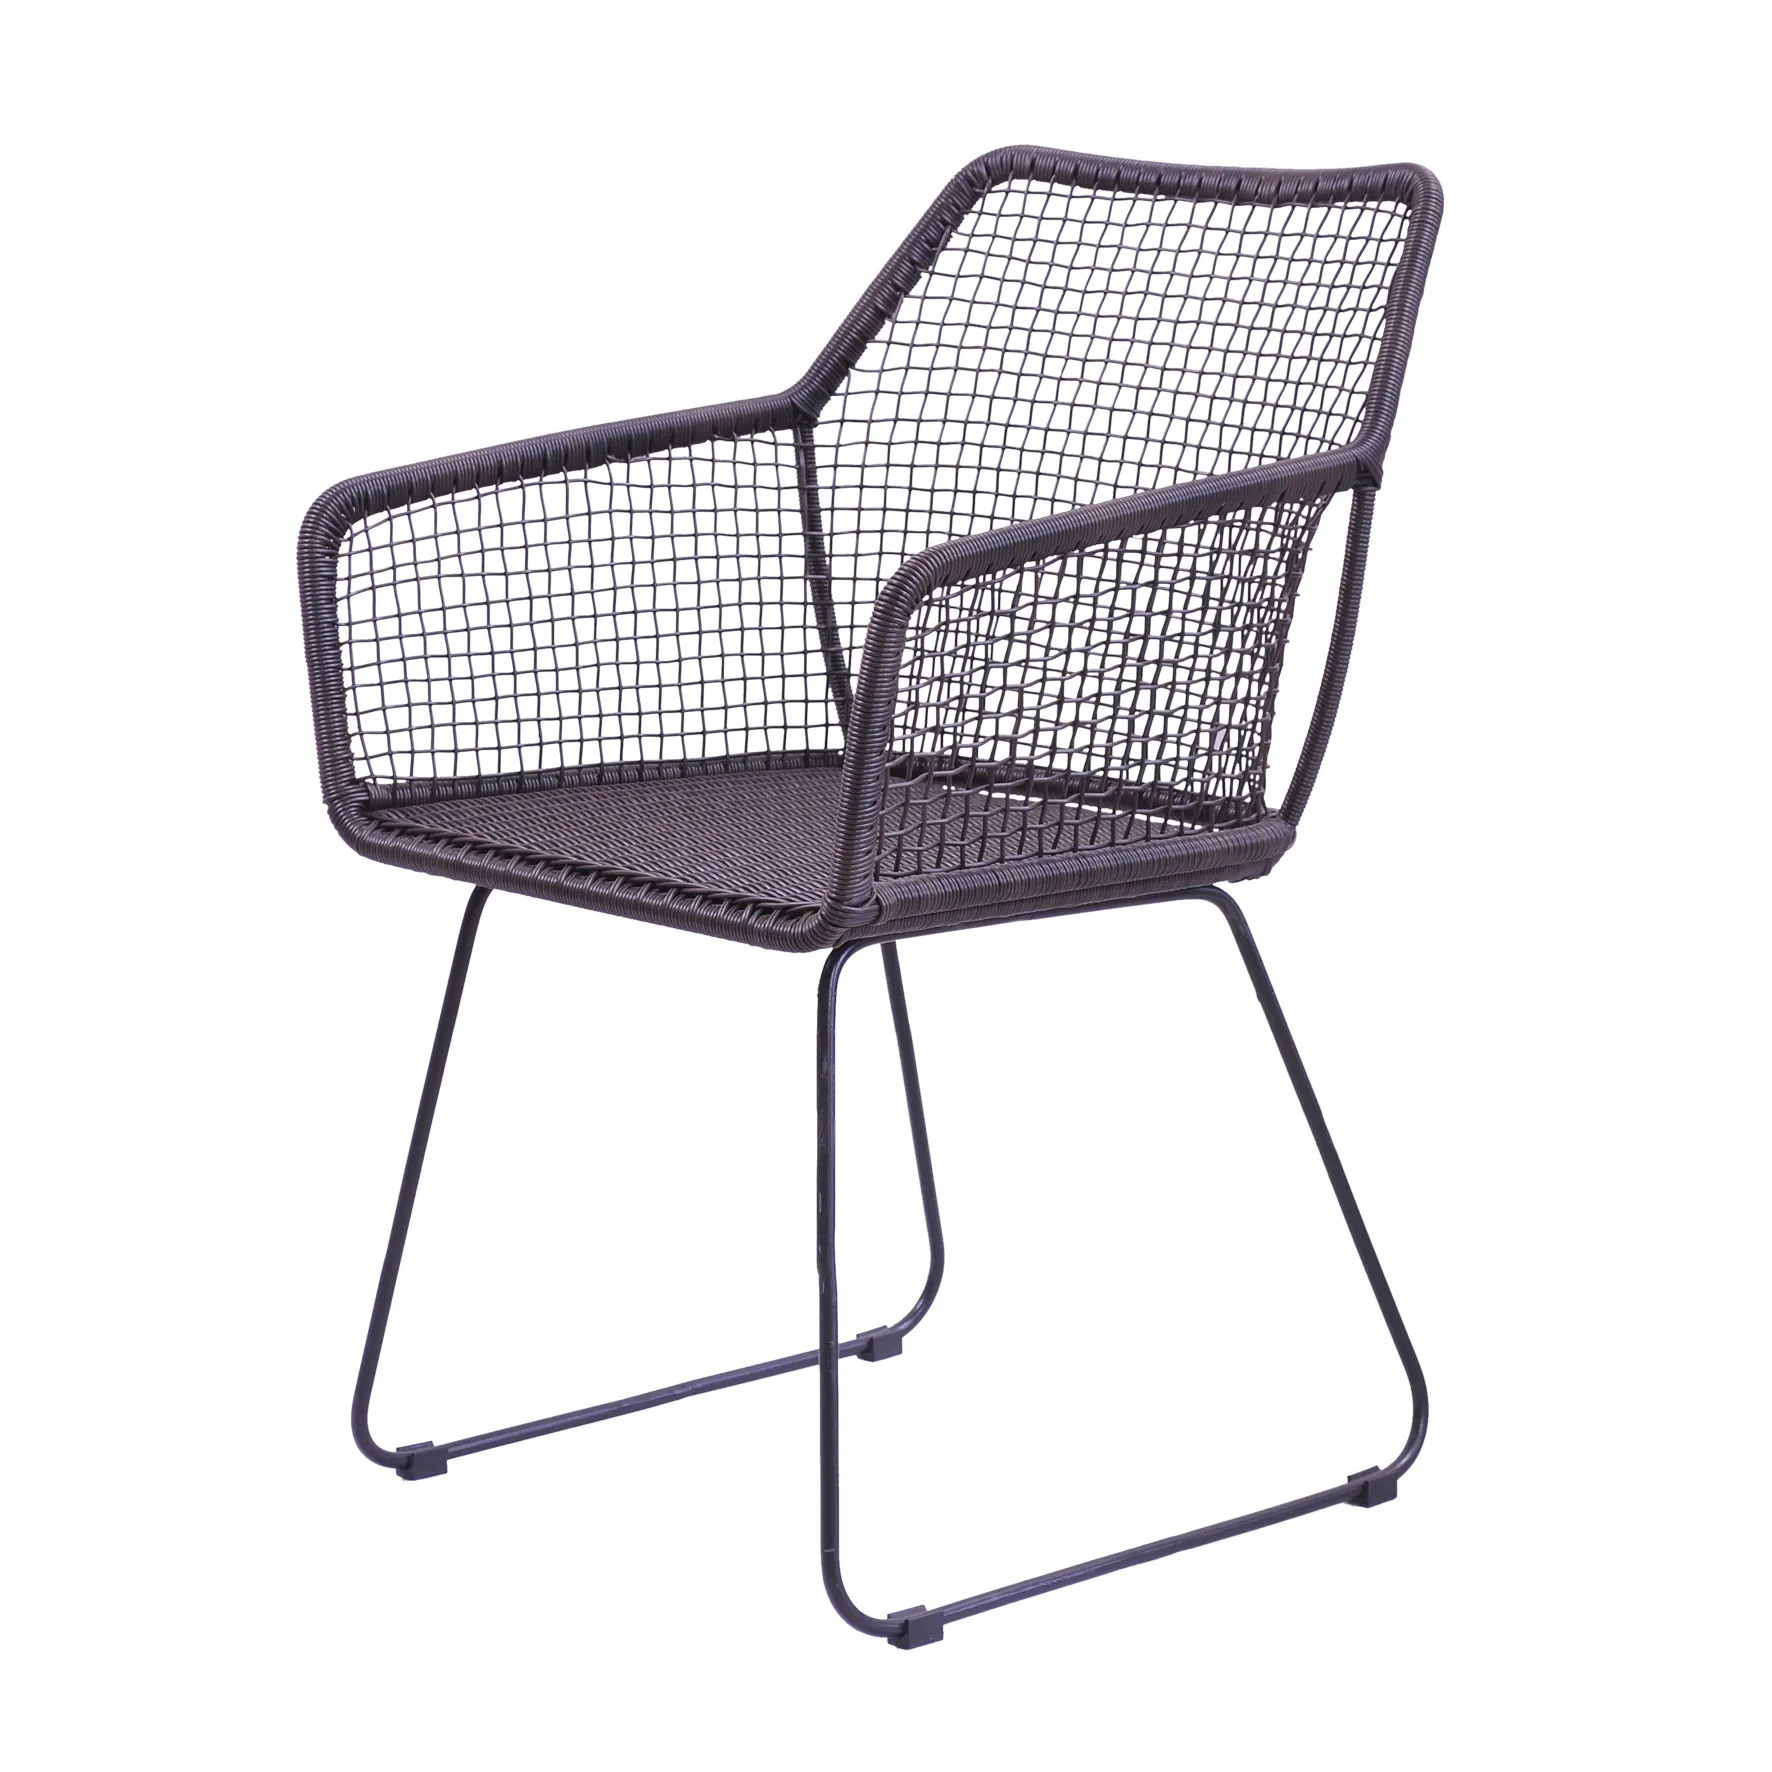 Cadeira rústica elegante, de alta qualidade, feita de rattan sintético com design moderno simples e elegante da austrália